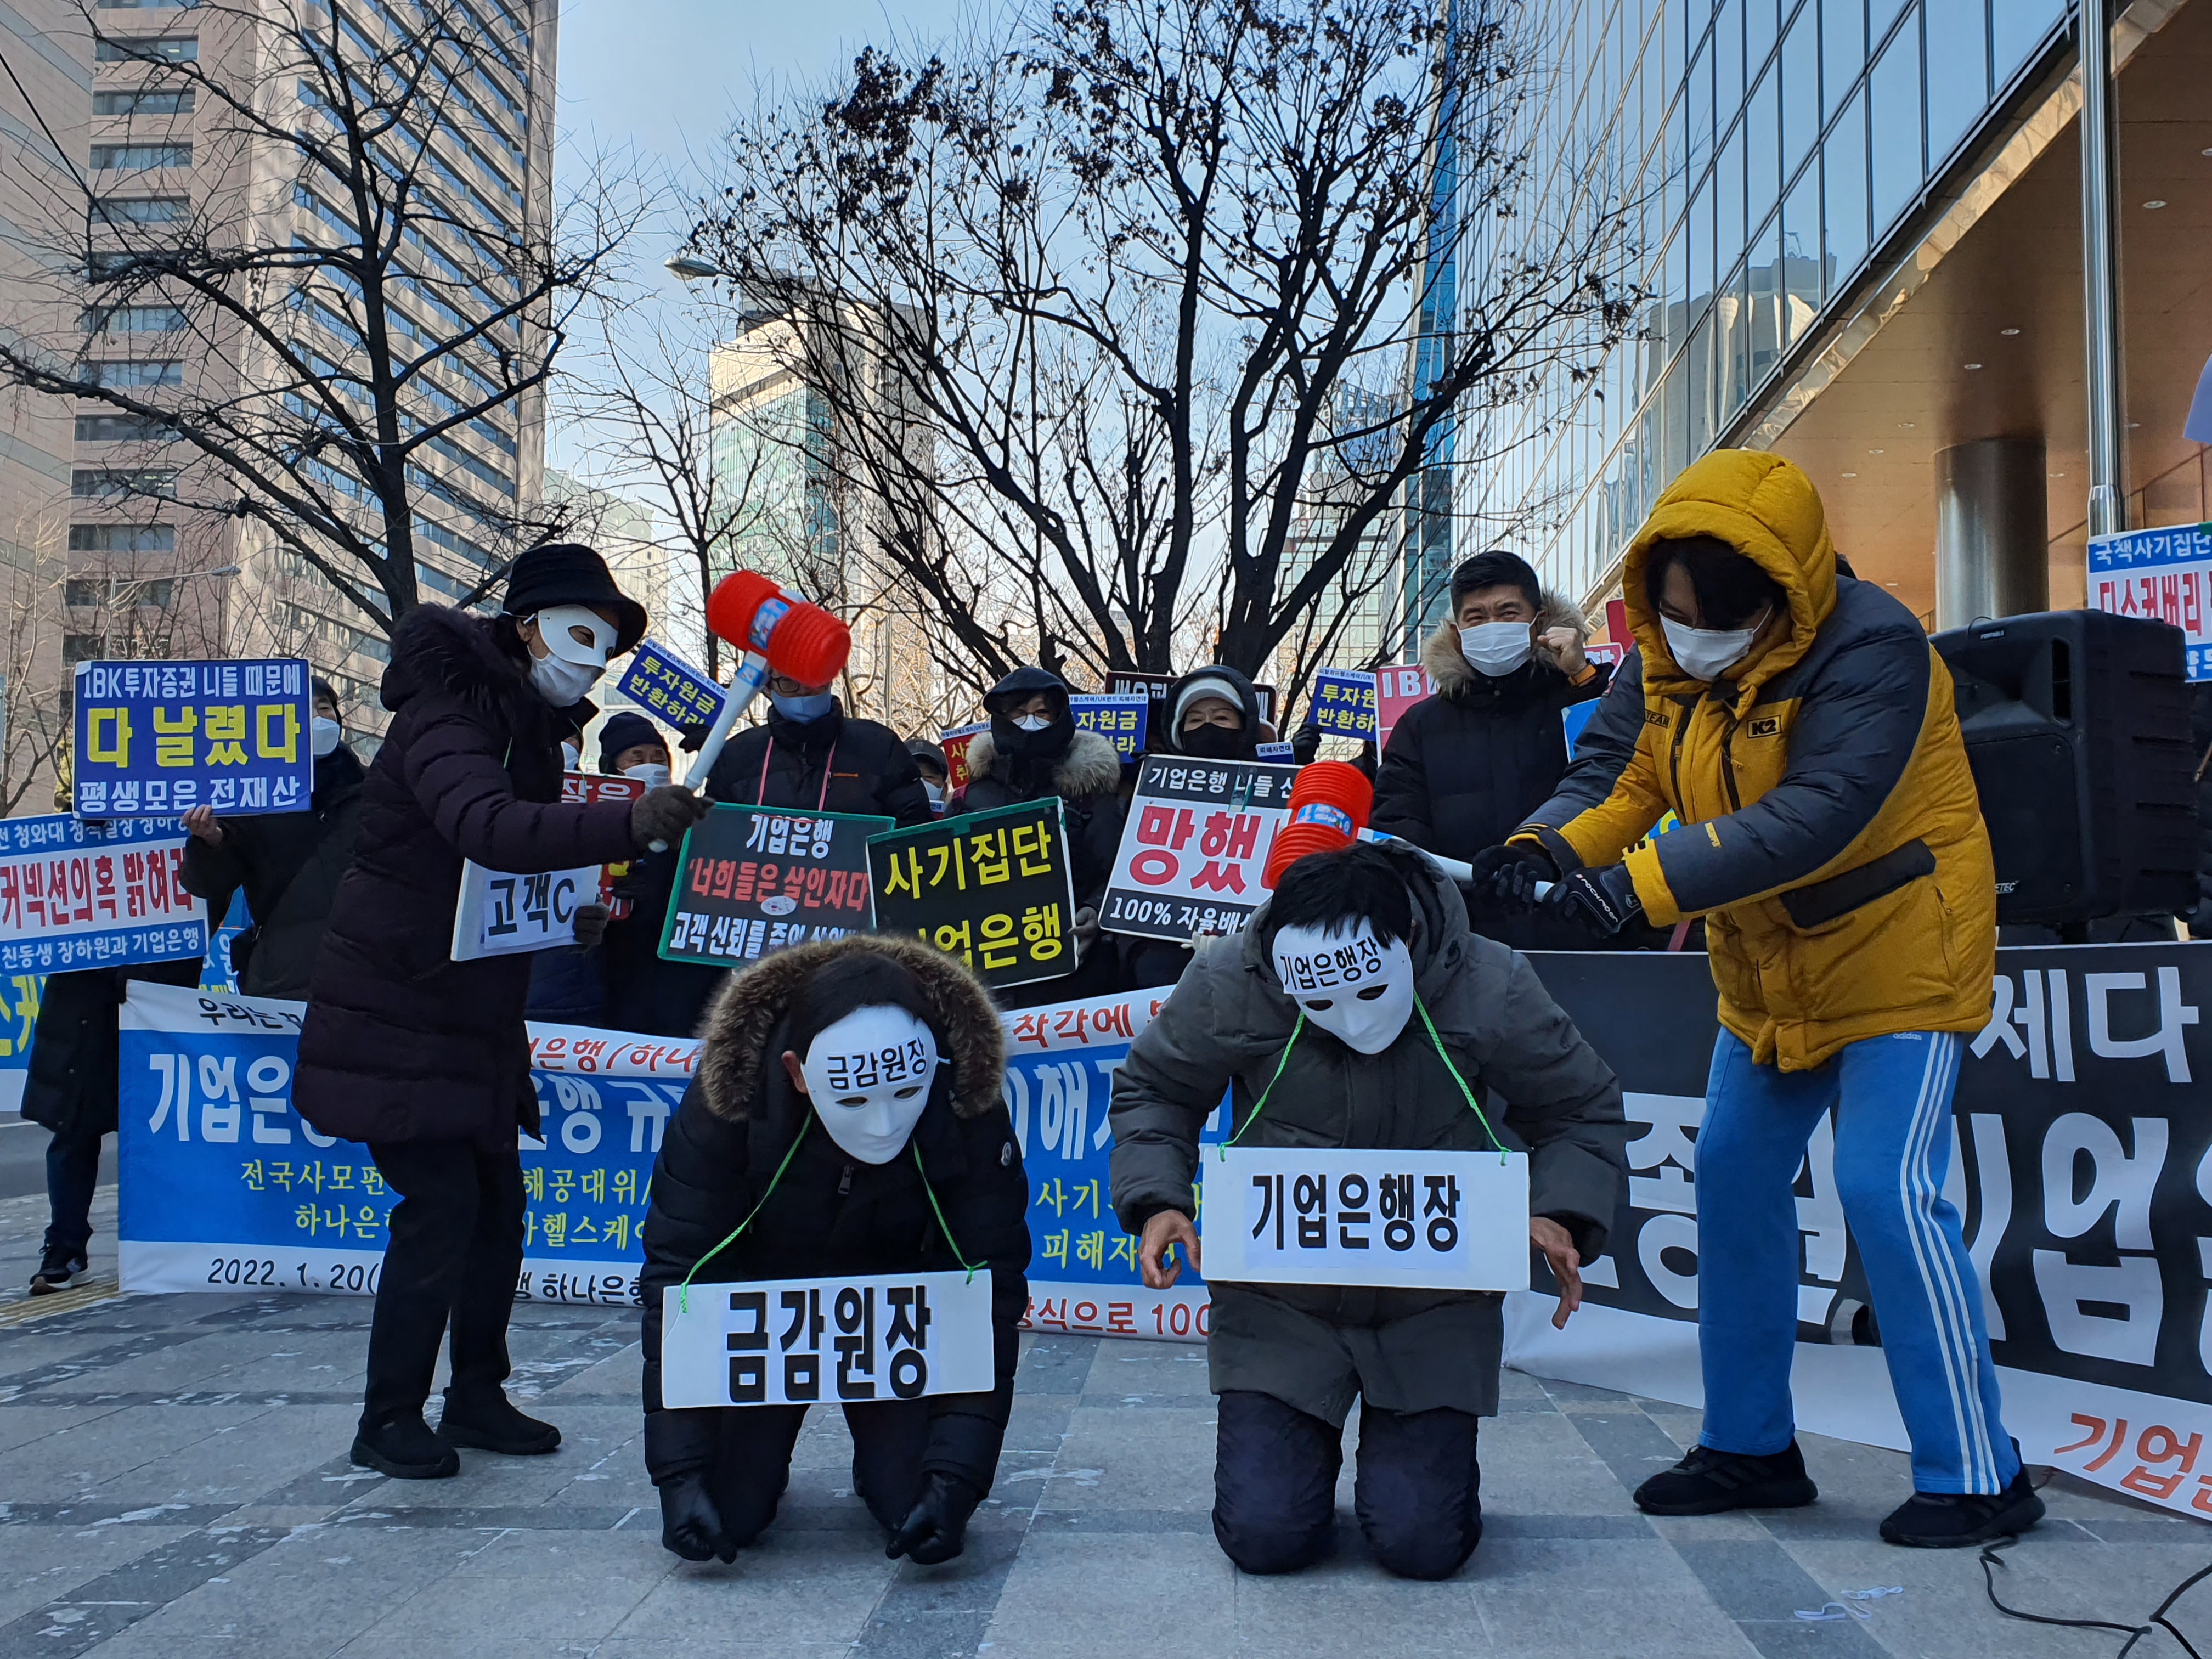 20일 서울 중구 IBK기업은행 본사 앞에서 열린 ‘IBK기업은행·하나은행 규탄 사모펀드 피해자 연합집회’에서 피해자들이 상황극 퍼포먼스를 하고 있다. 황인주 기자